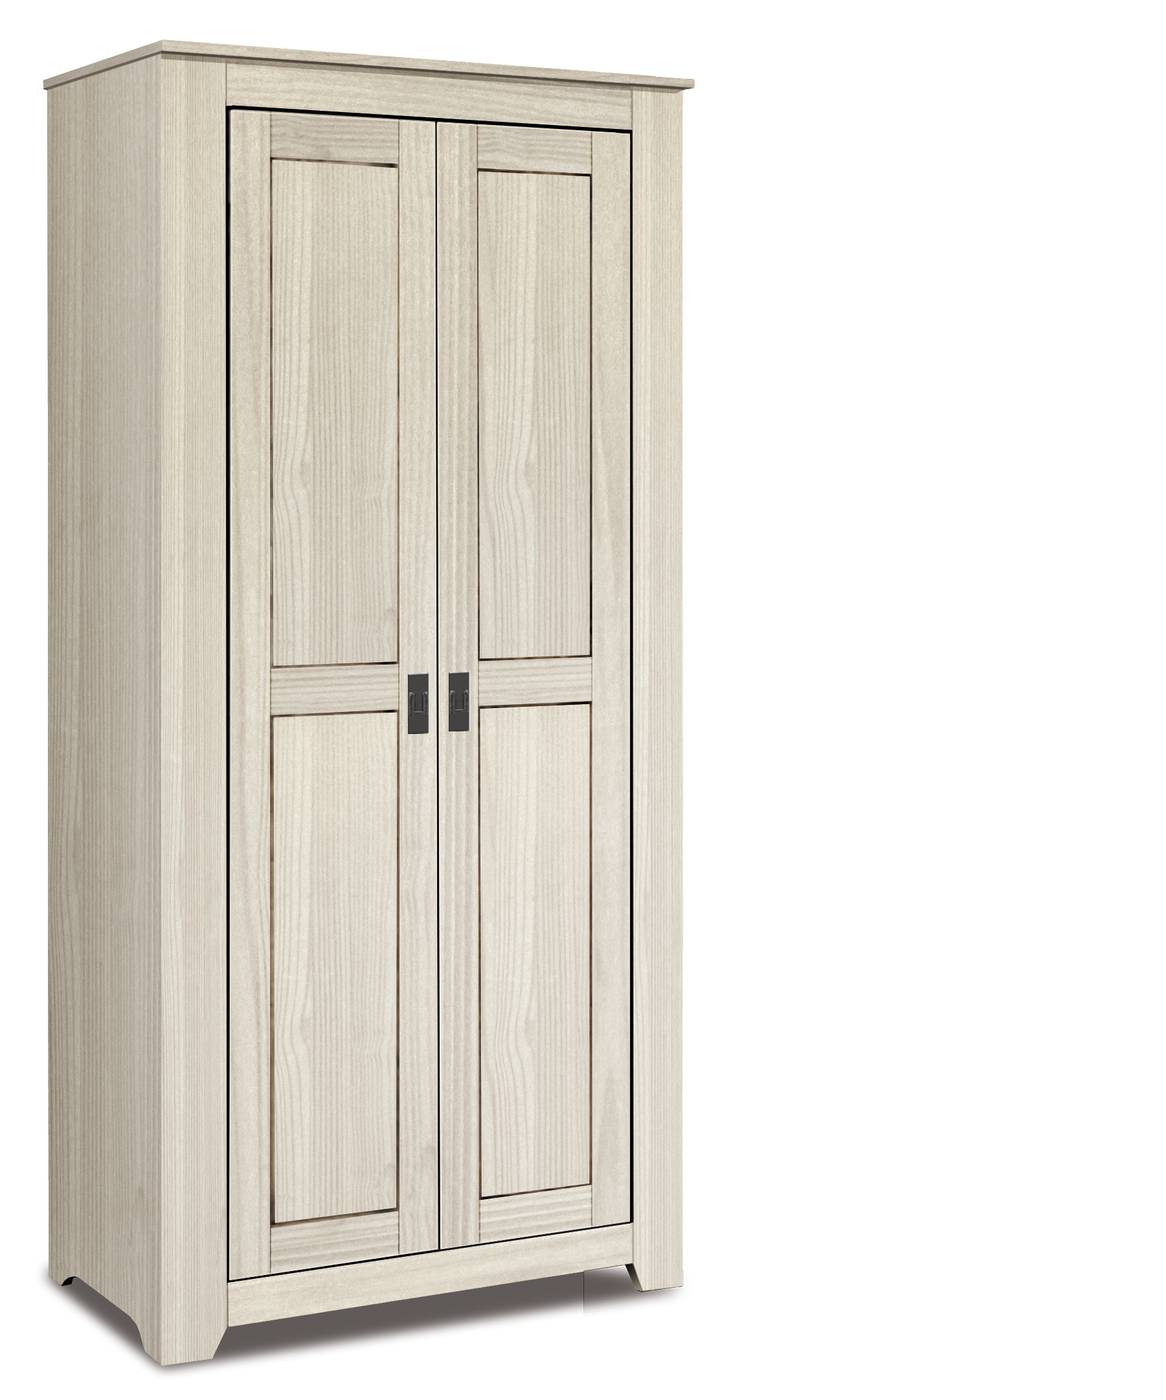 Armario de madera maciza de 2 puertas color blanco lavado